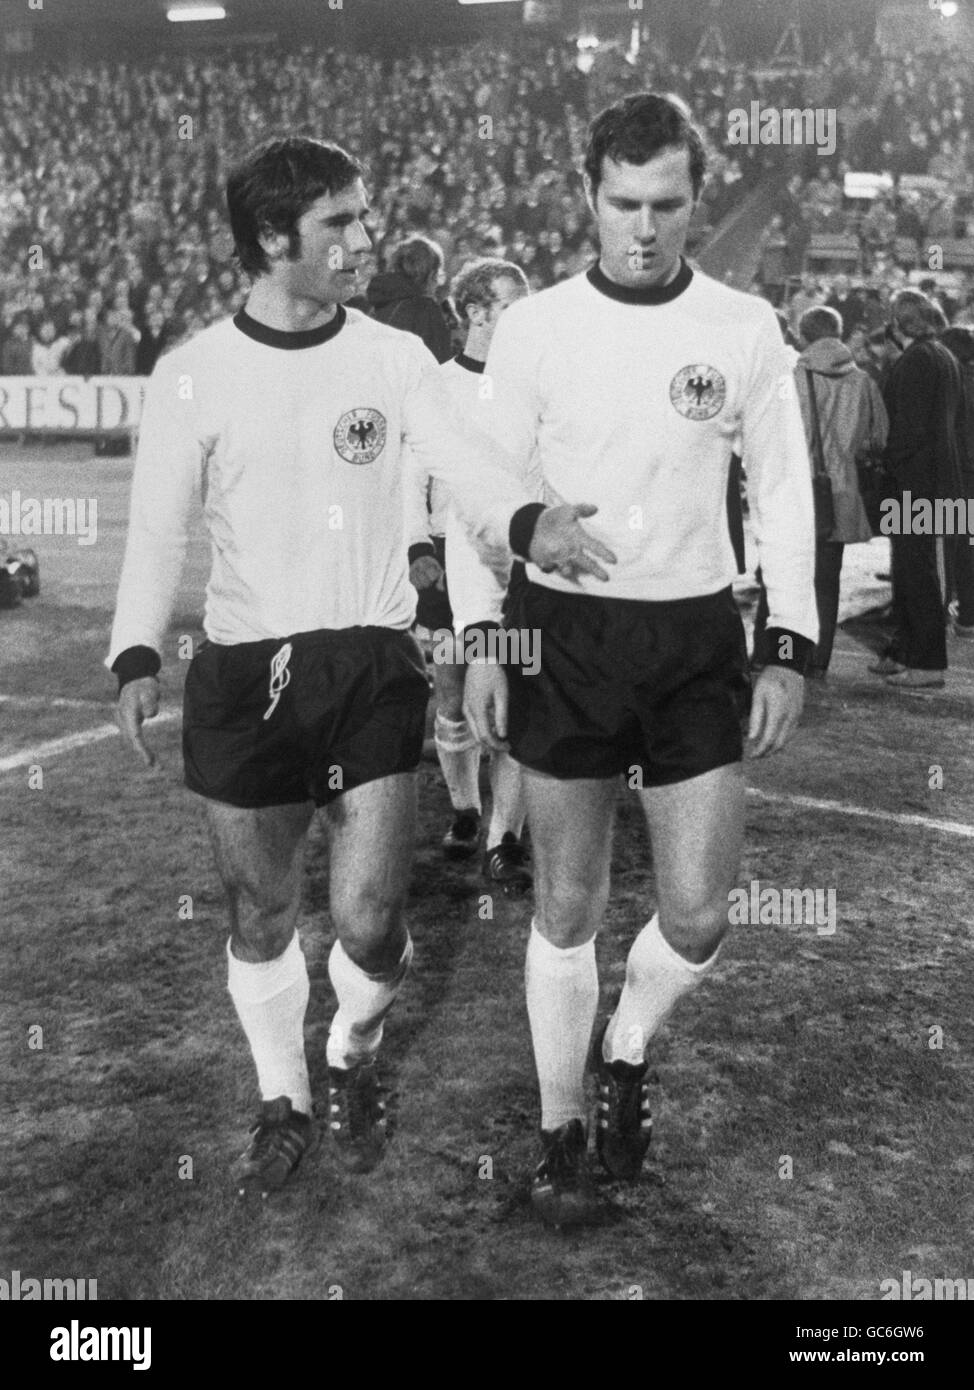 Campionato Europeo Di Calcio 1968 Immagini e Fotos Stock - Alamy